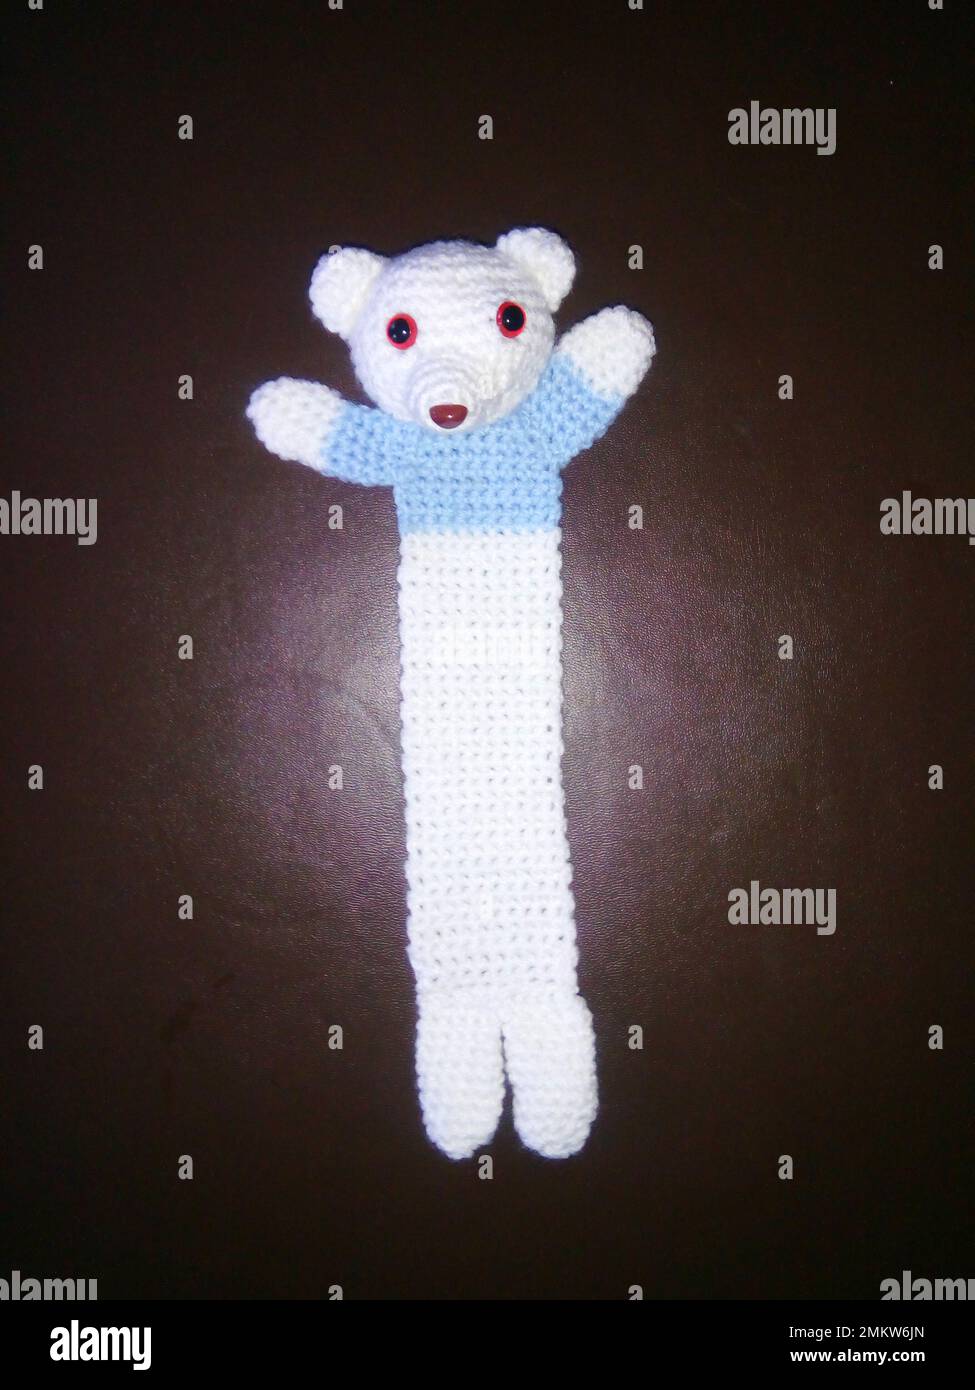 Marque-page en forme d'ours en peluche crocheté portant un pull bleu pâle. Marque-page fait main, arts et artisanat. Banque D'Images